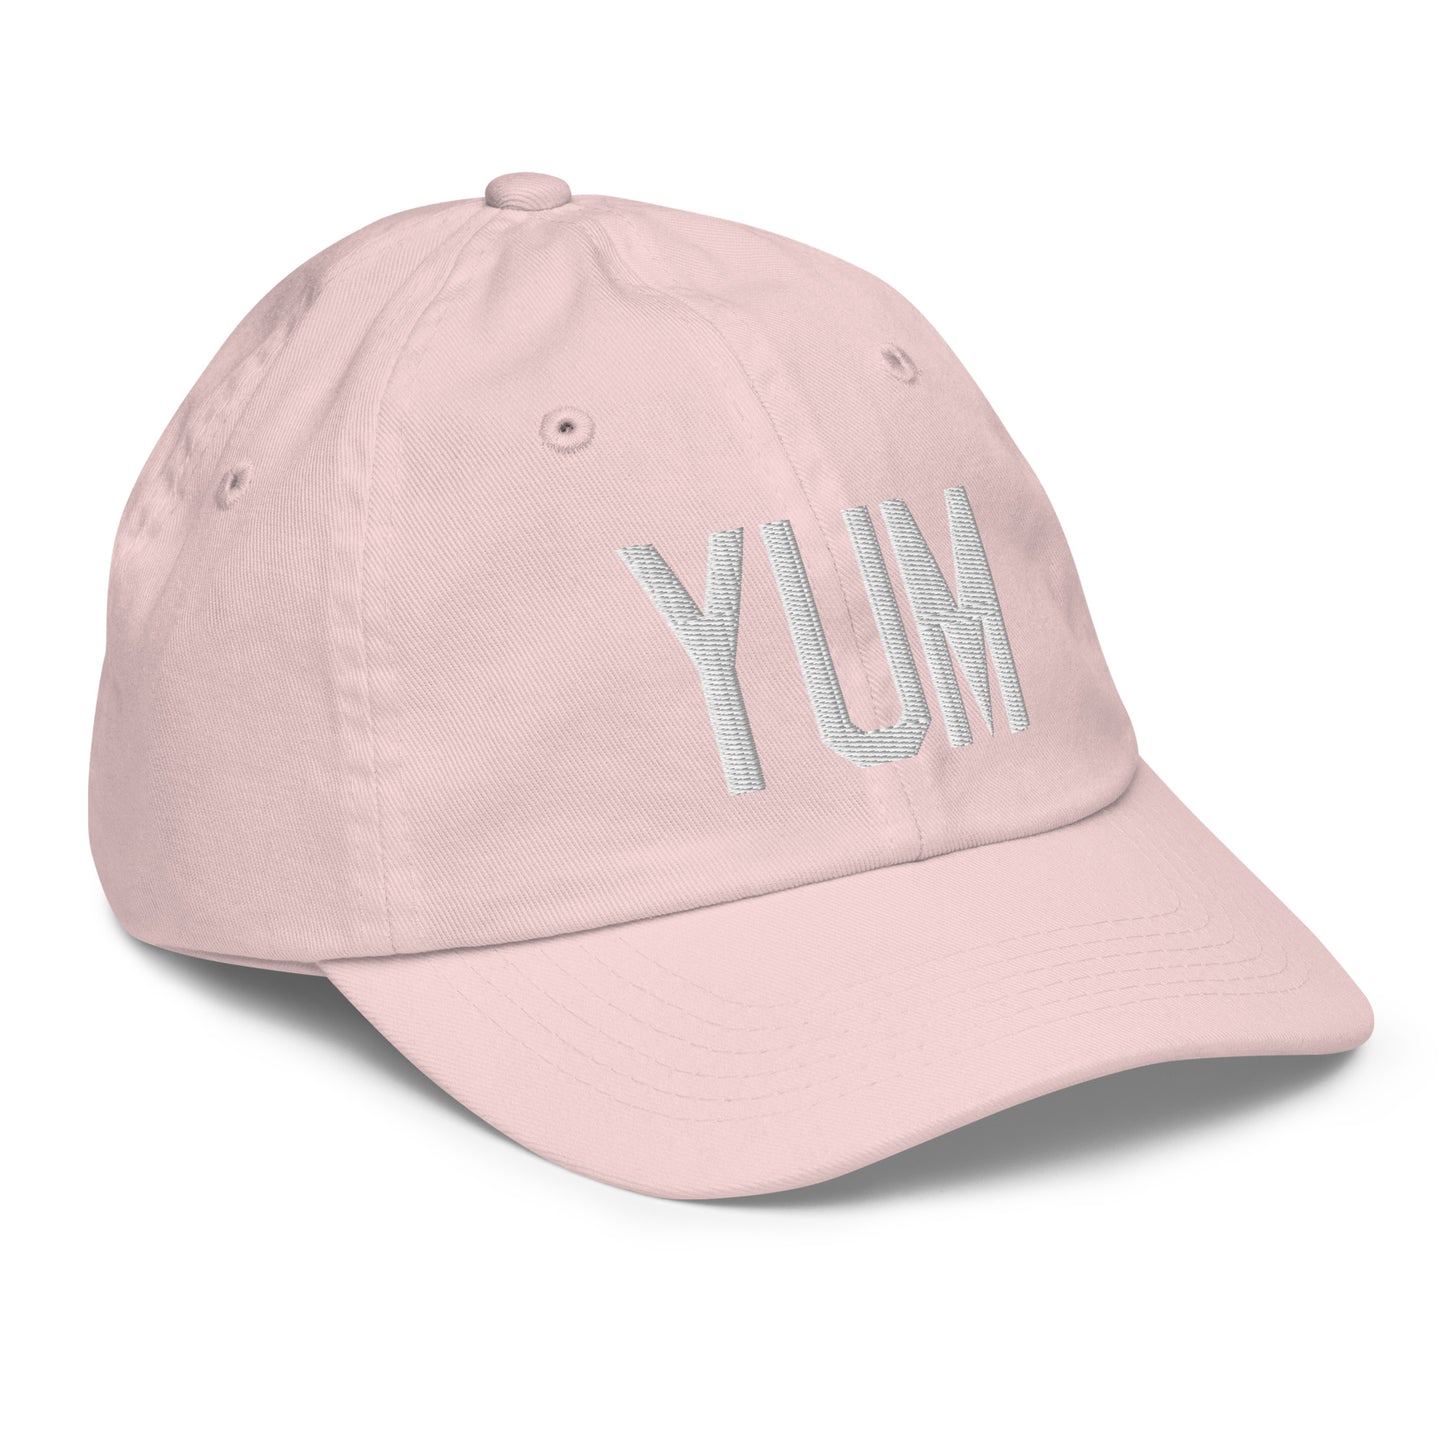 Airport Code Kid's Baseball Cap - White • YUM Yuma • YHM Designs - Image 32